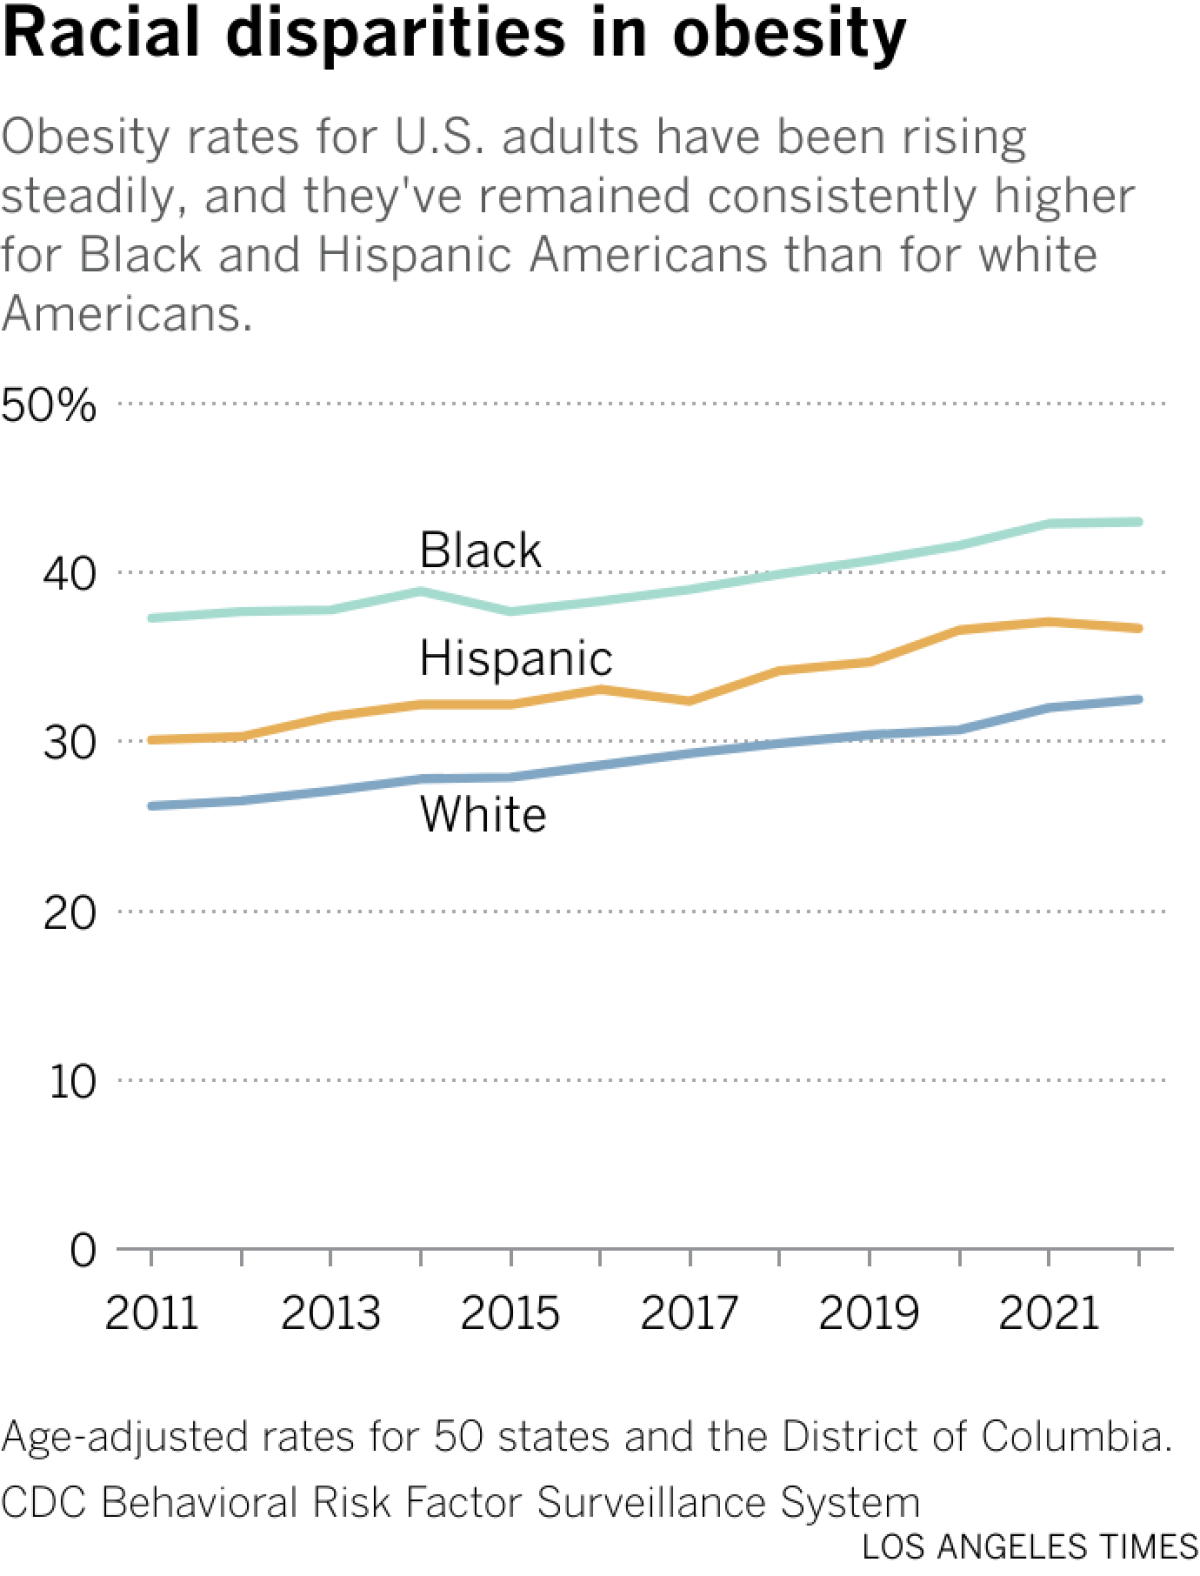 Les taux d'obésité chez les adultes américains ont augmenté régulièrement et sont restés constamment plus élevés pour les Américains noirs et hispaniques que pour les Américains blancs.